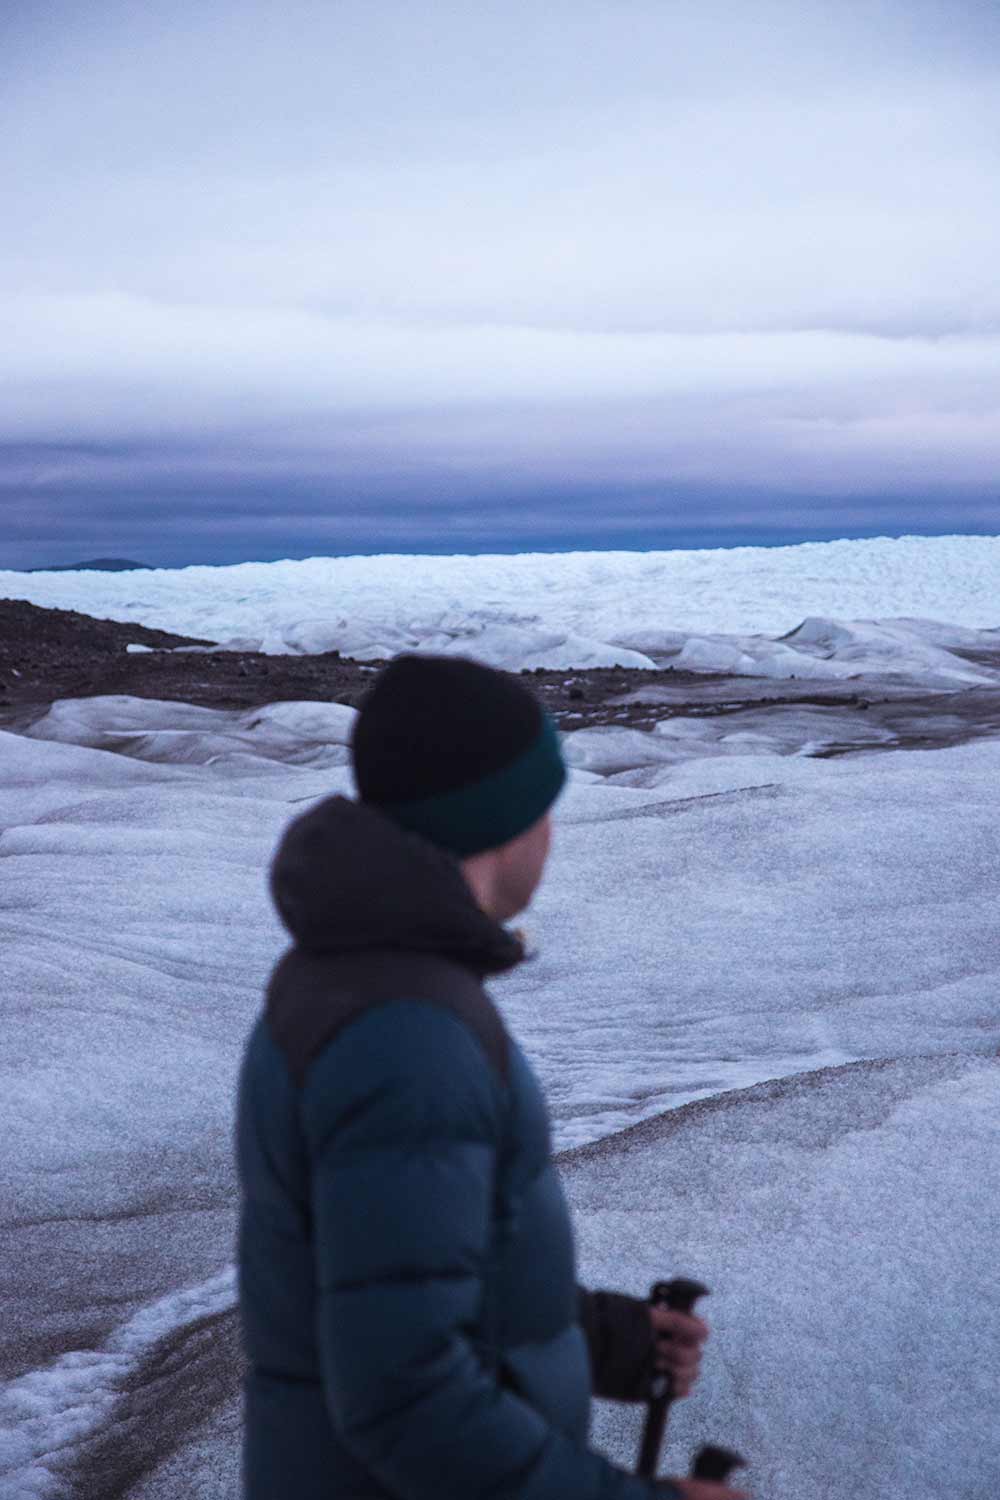 Wandeling op de Groenlandse ijskap onder de middernachtzon